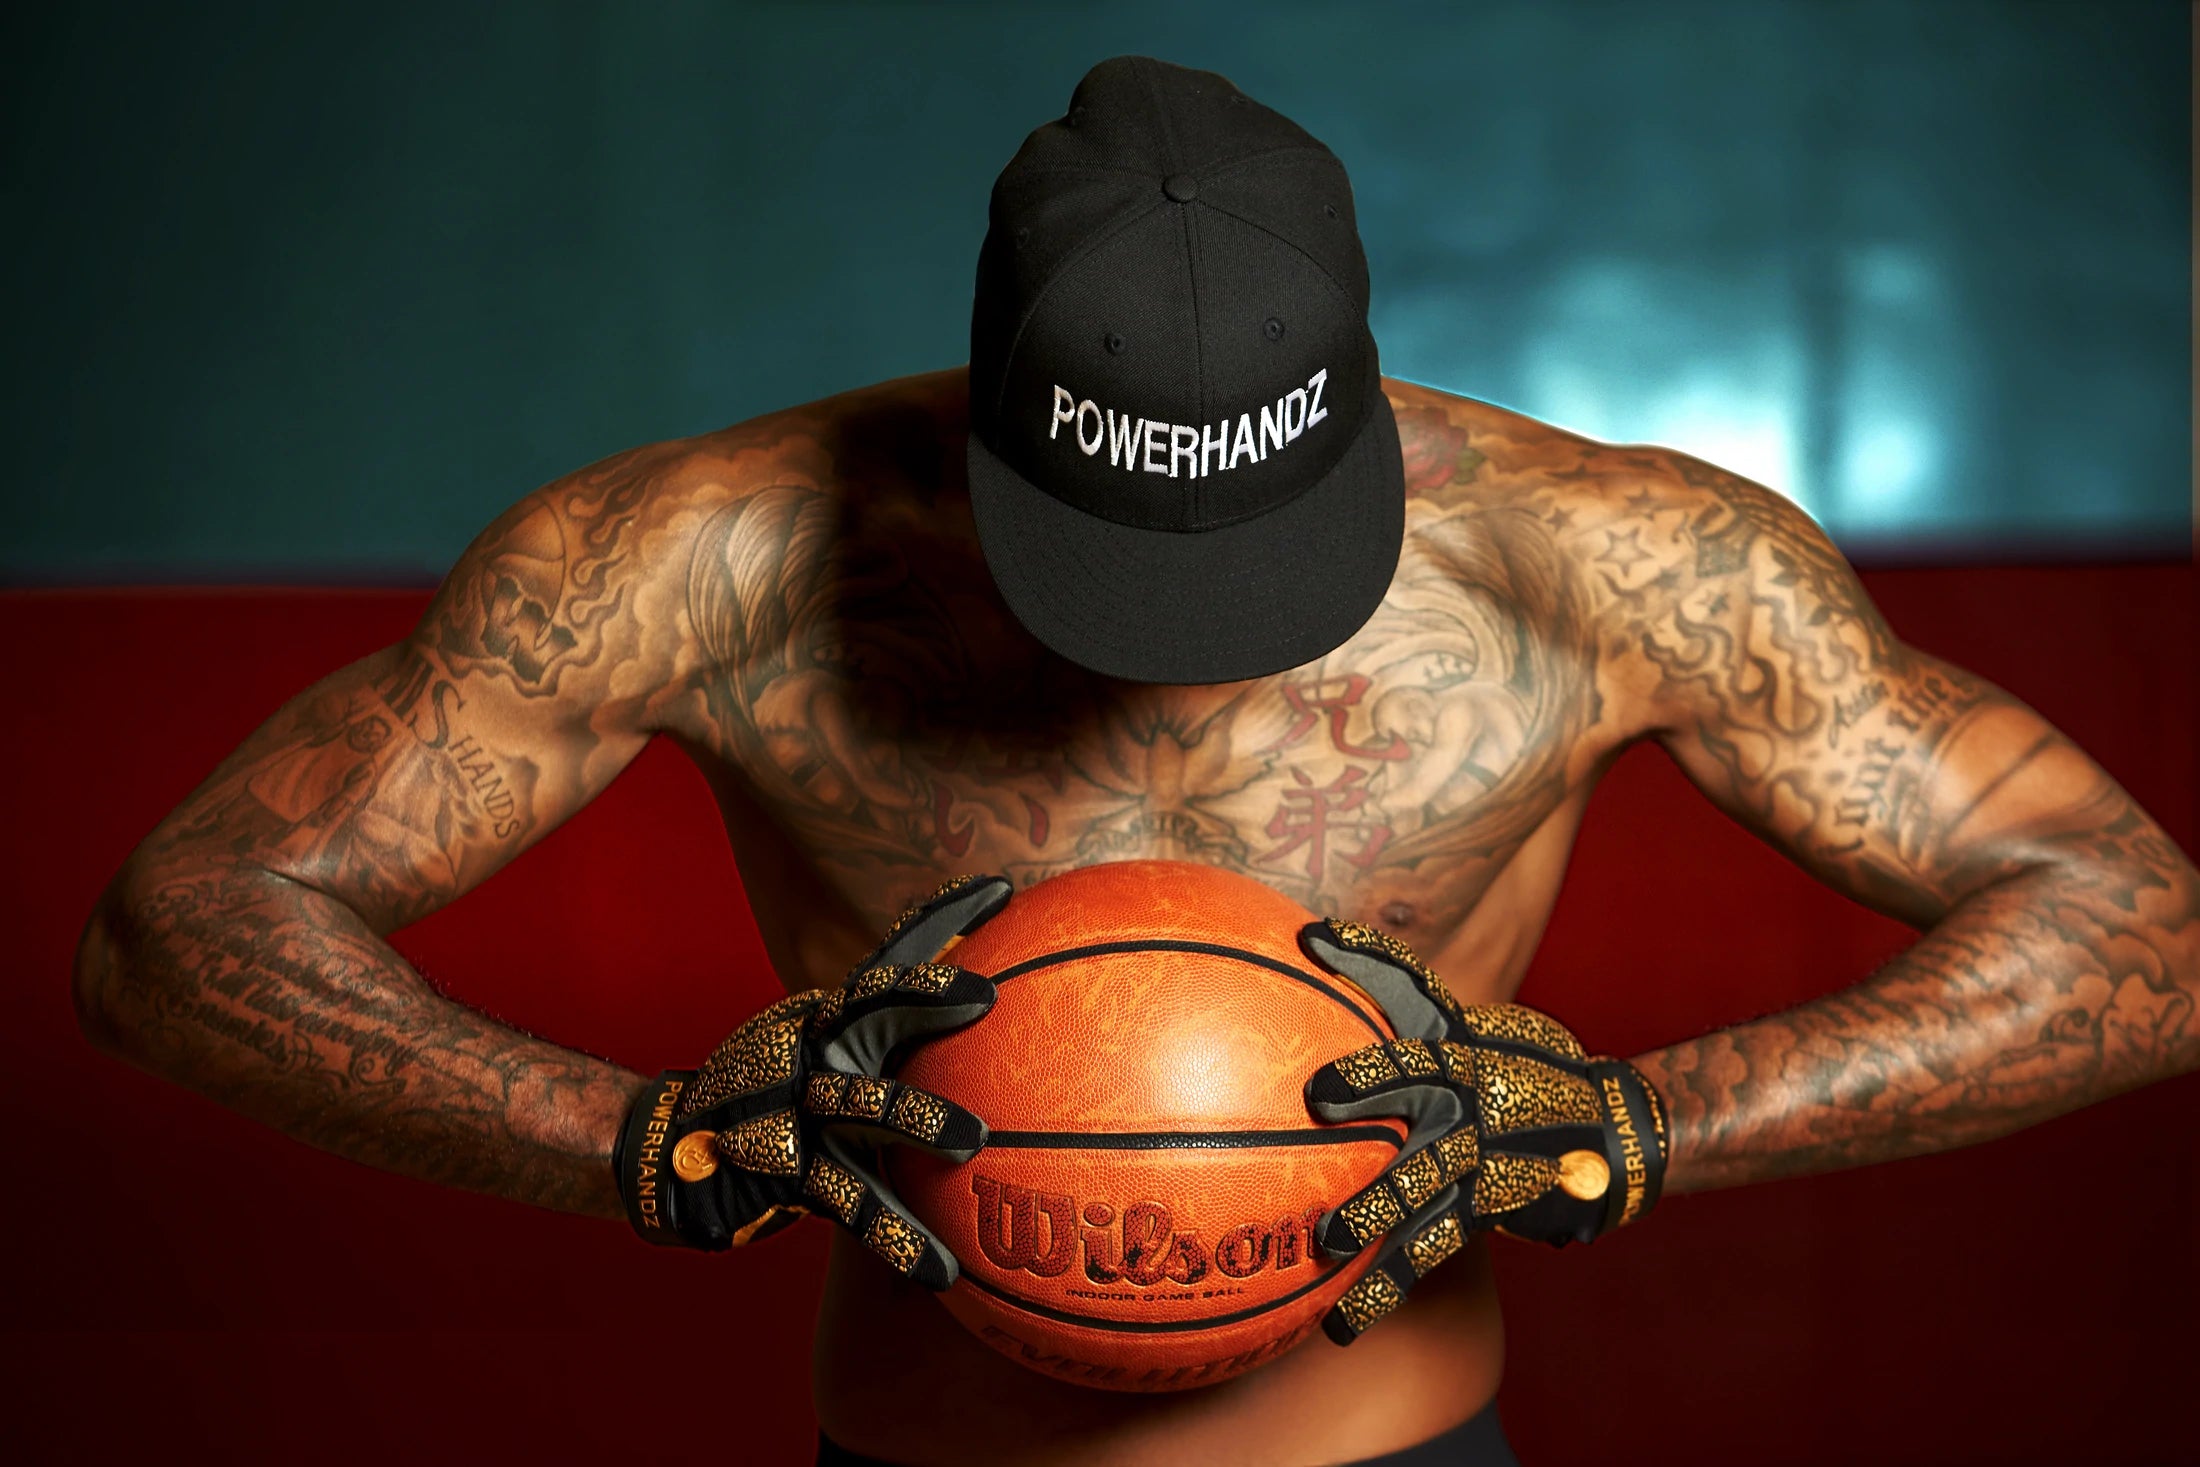 POWERHANDZ Basketball Anti-Grip Weighted Gloves - POWERHANDZ